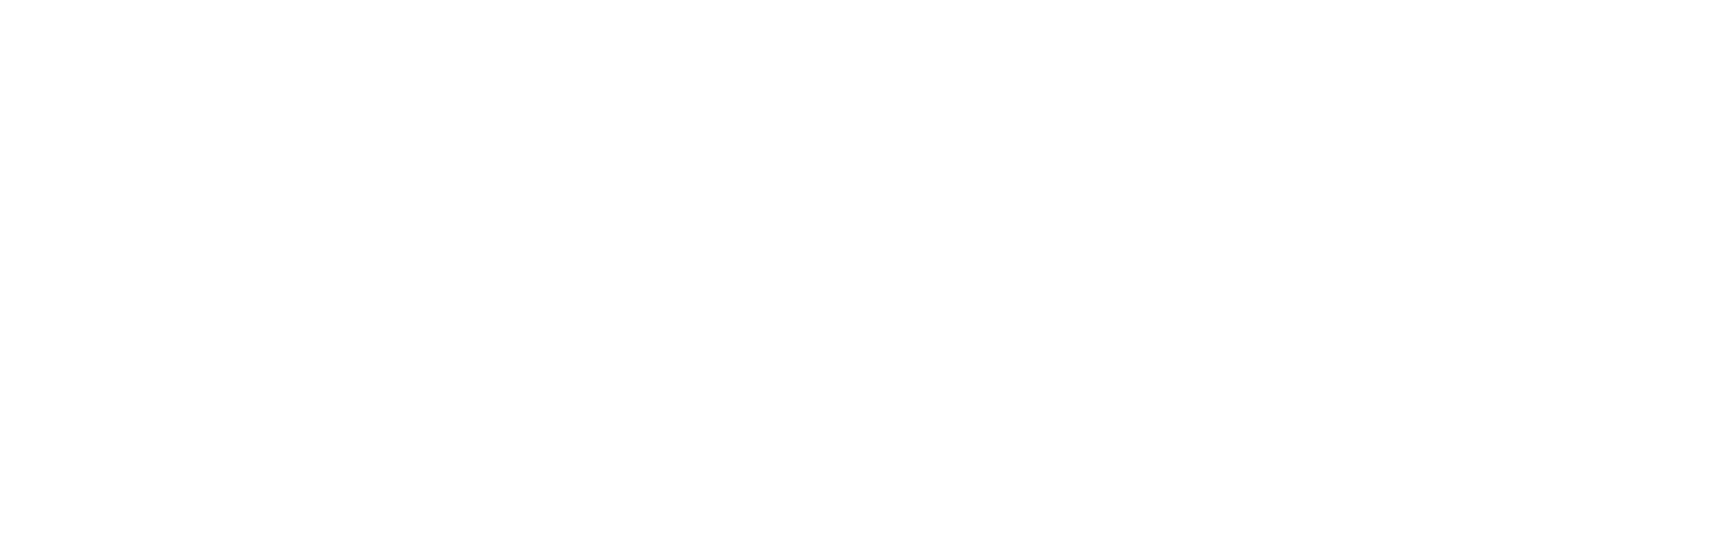 American Cargo Group LOGO